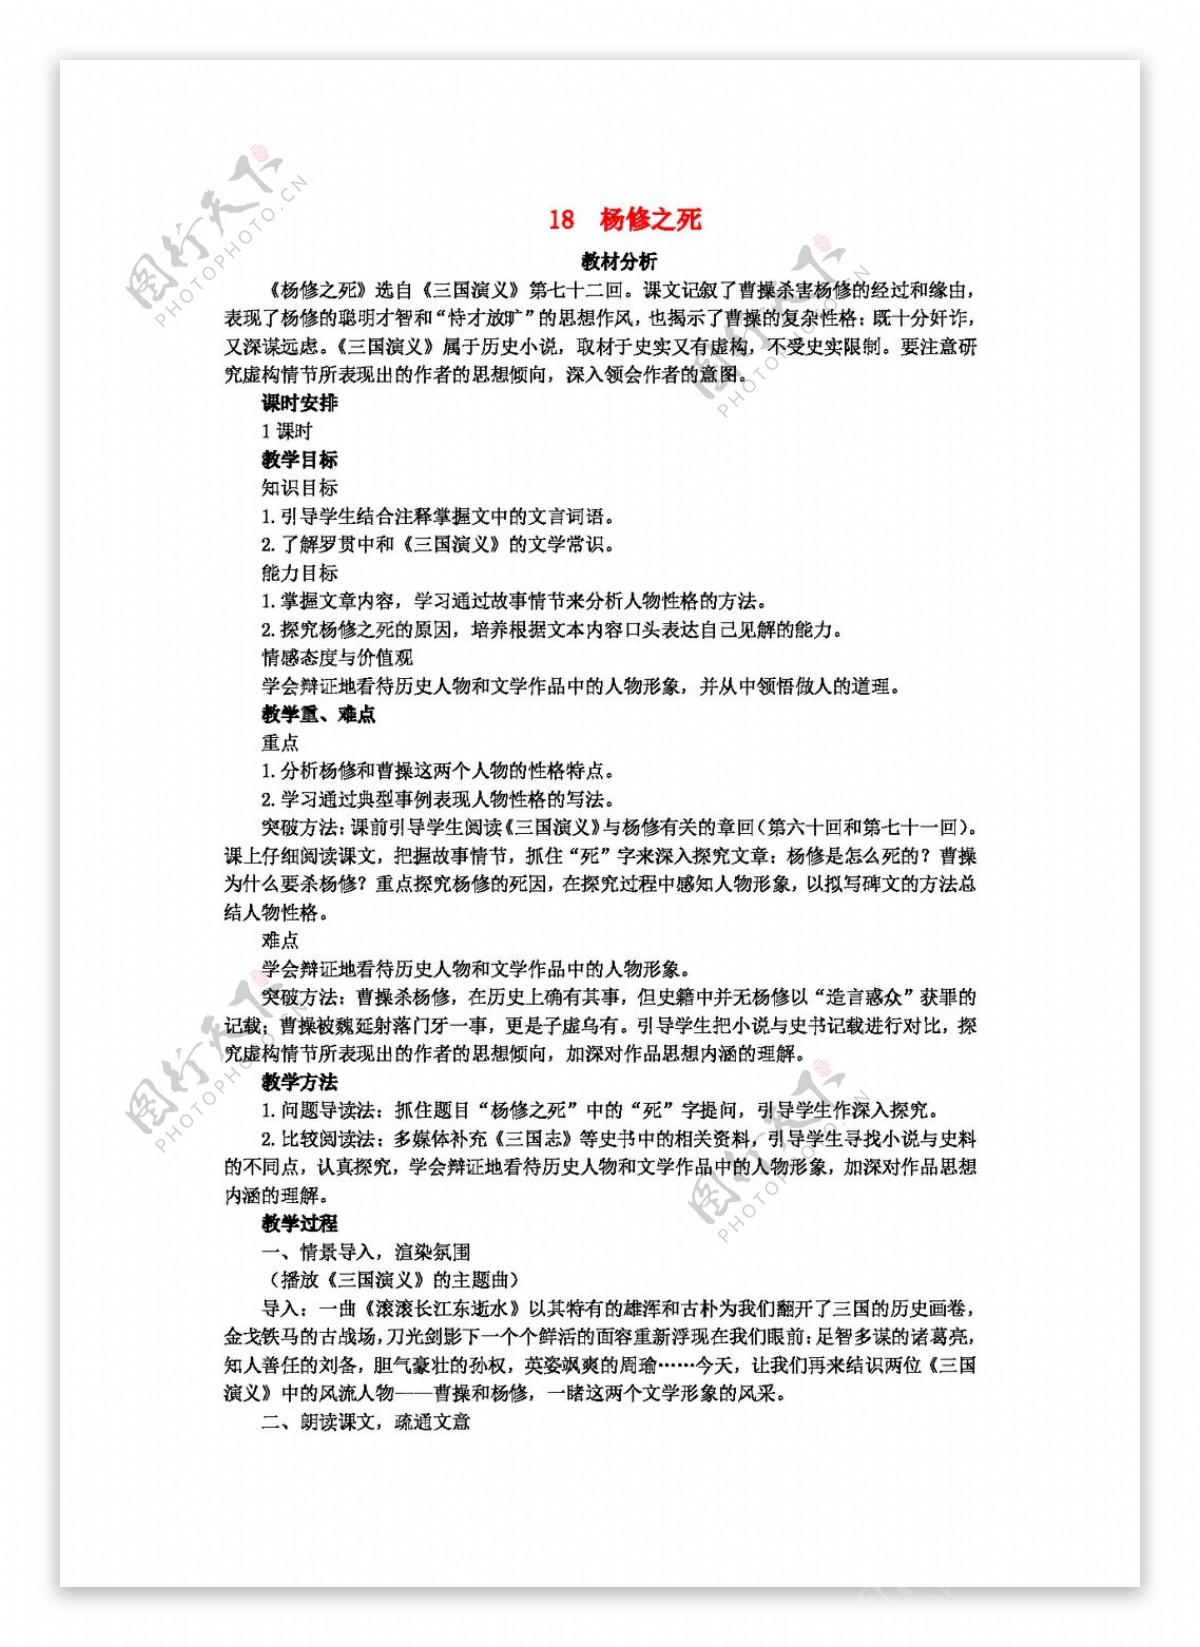 语文人教版九年级语文上册第18课杨修之死教案